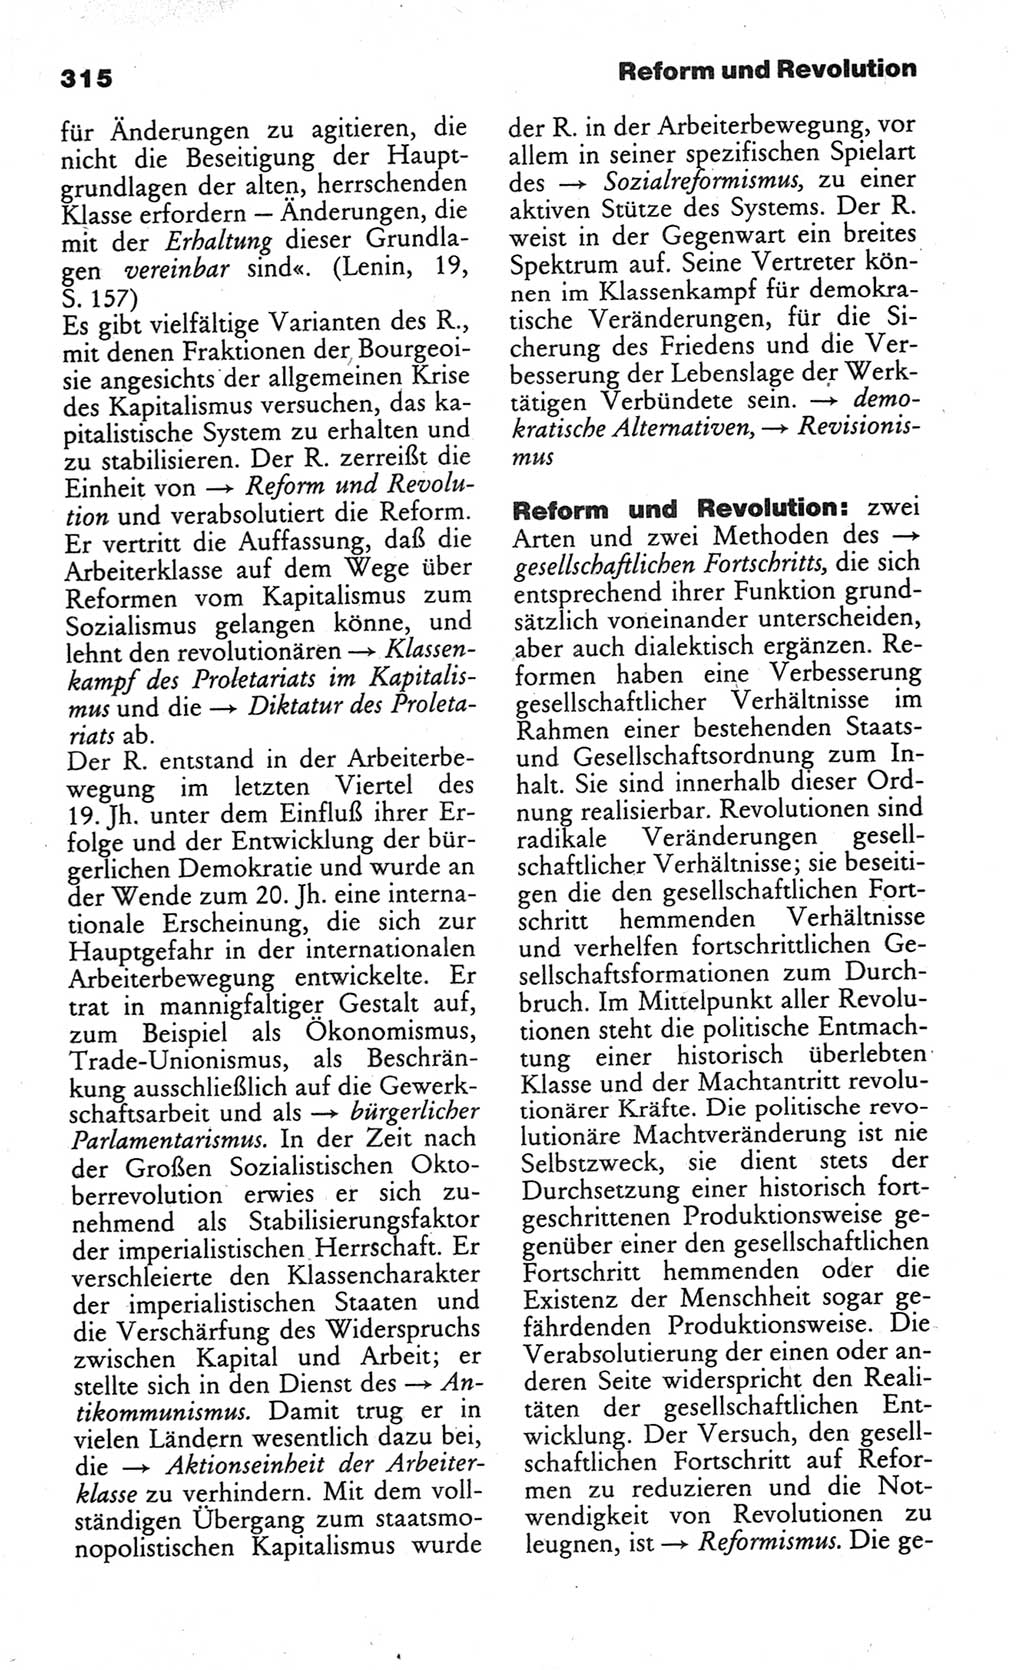 Wörterbuch des wissenschaftlichen Kommunismus [Deutsche Demokratische Republik (DDR)] 1984, Seite 315 (Wb. wiss. Komm. DDR 1984, S. 315)